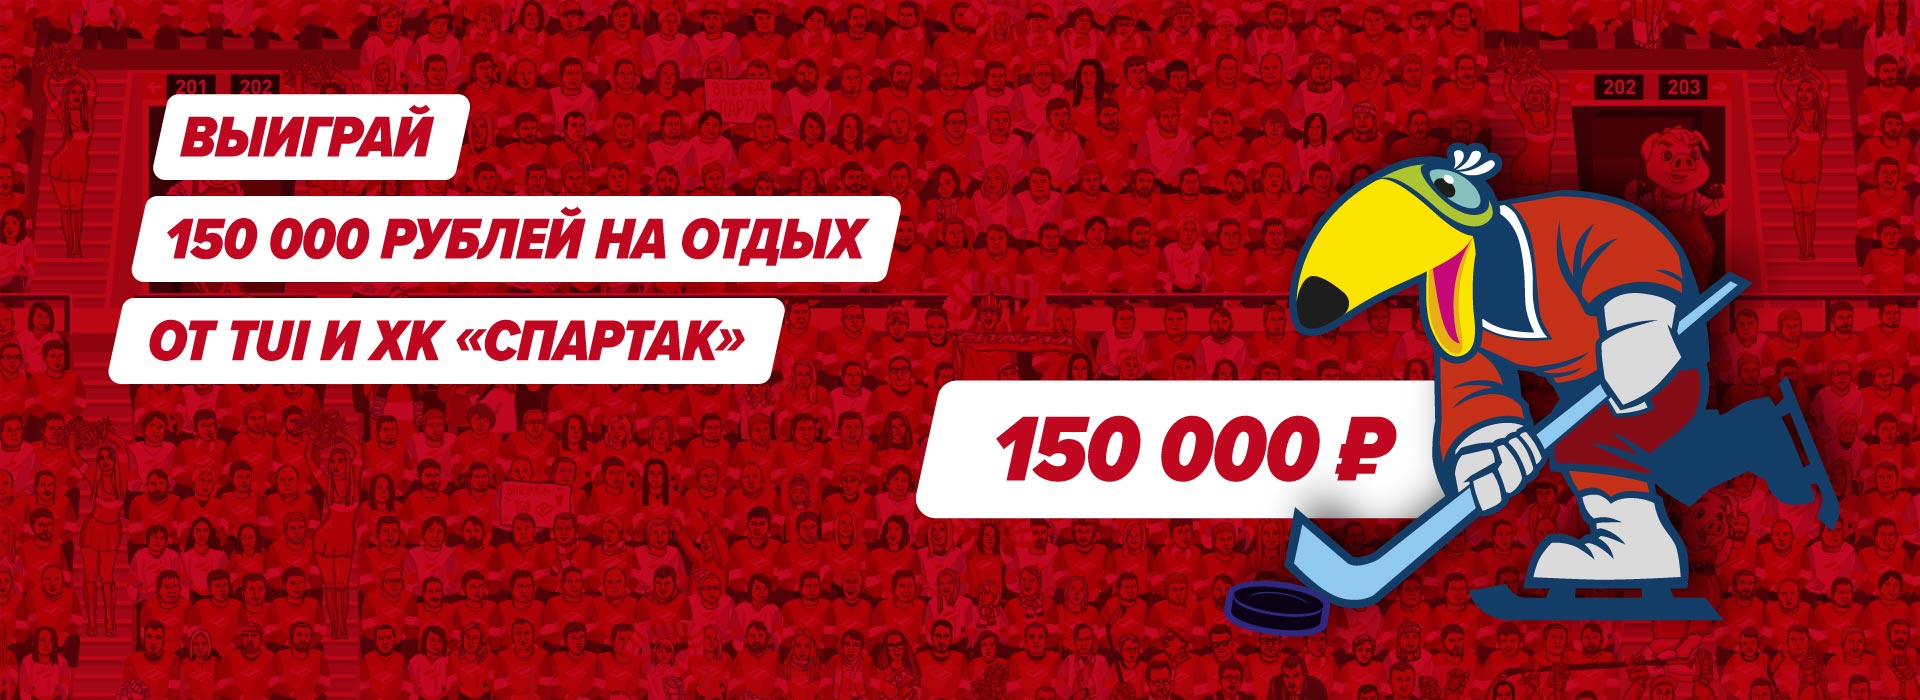 Разыгрываем 150000 рублей